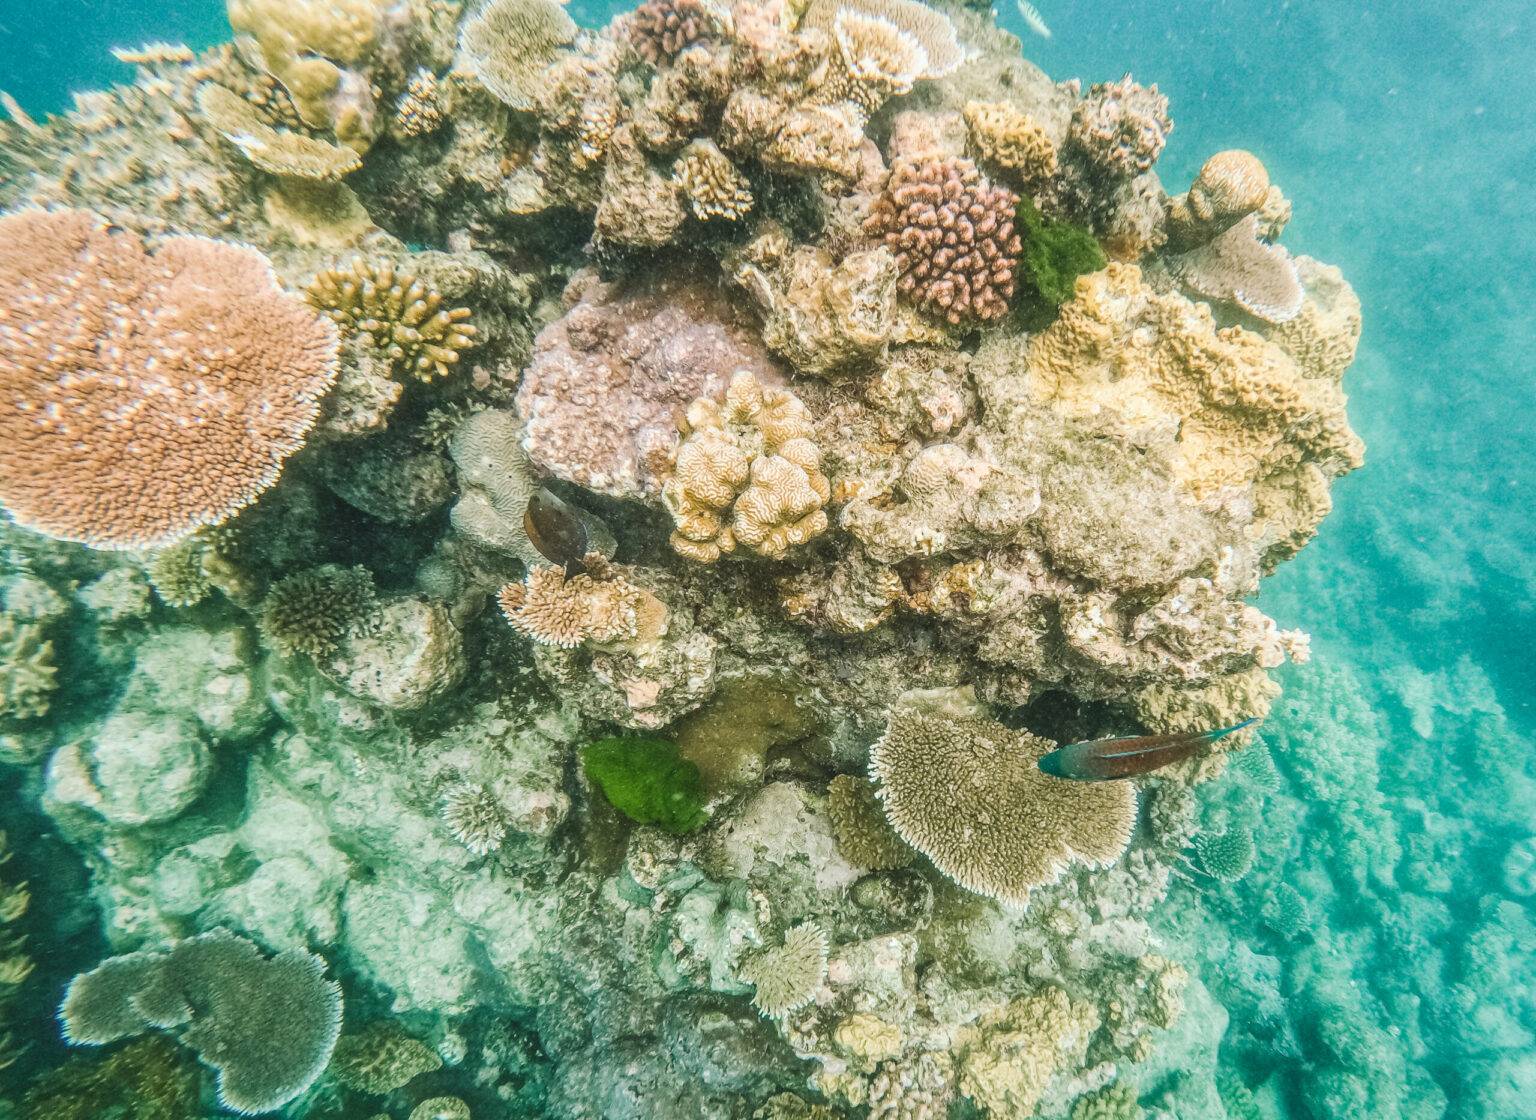 Bucketliste: schnorcheln und tauchen am Great Barrier Reef.